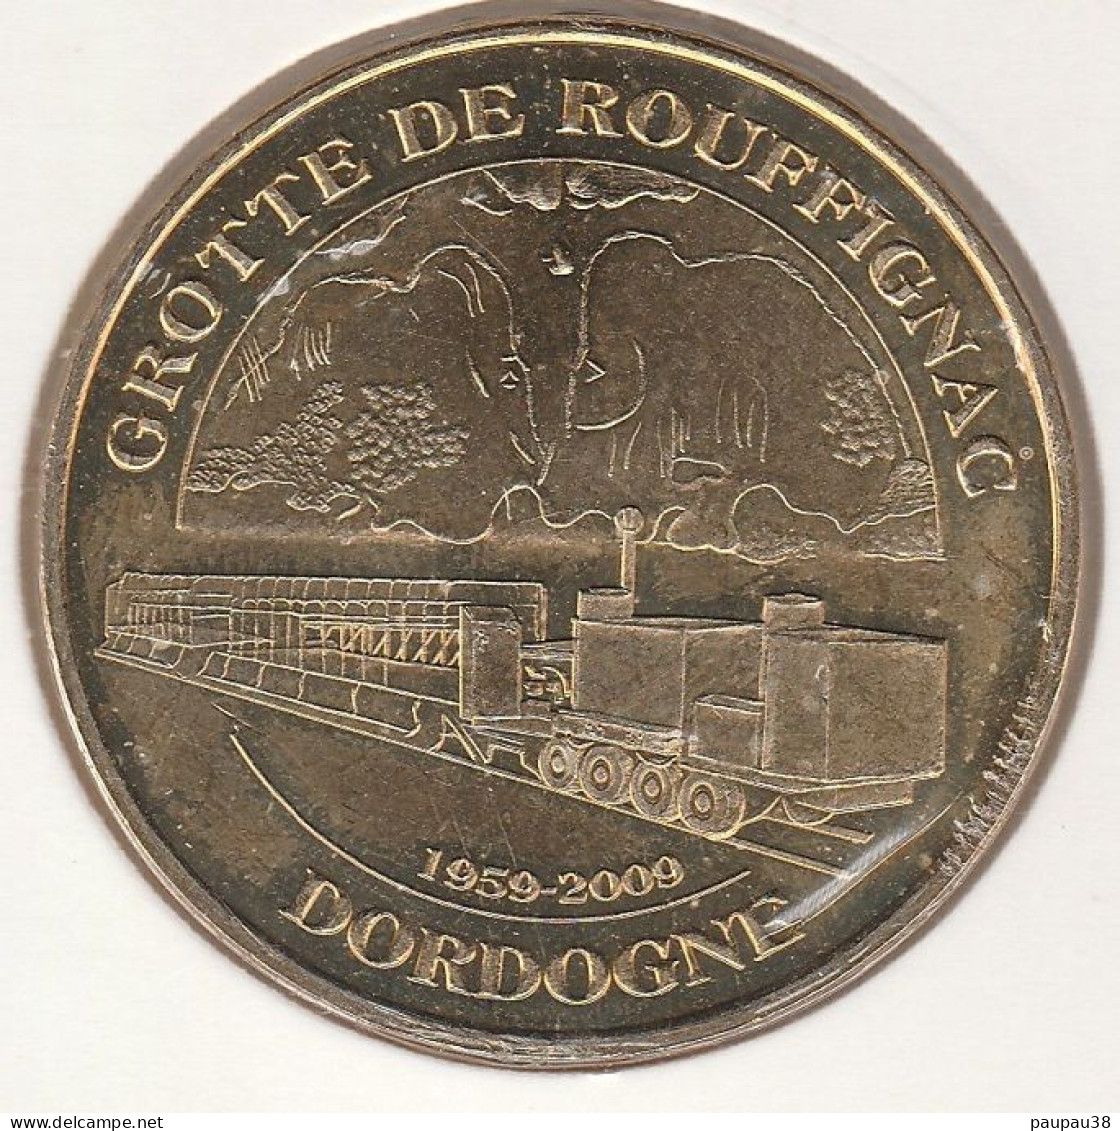 MONNAIE DE PARIS 2009 - 24 ROUFFIGNAC-SAINT-CERNIN-DE-REILHAC Grotte - Les 2 Mammouths Et Le Train - 2009